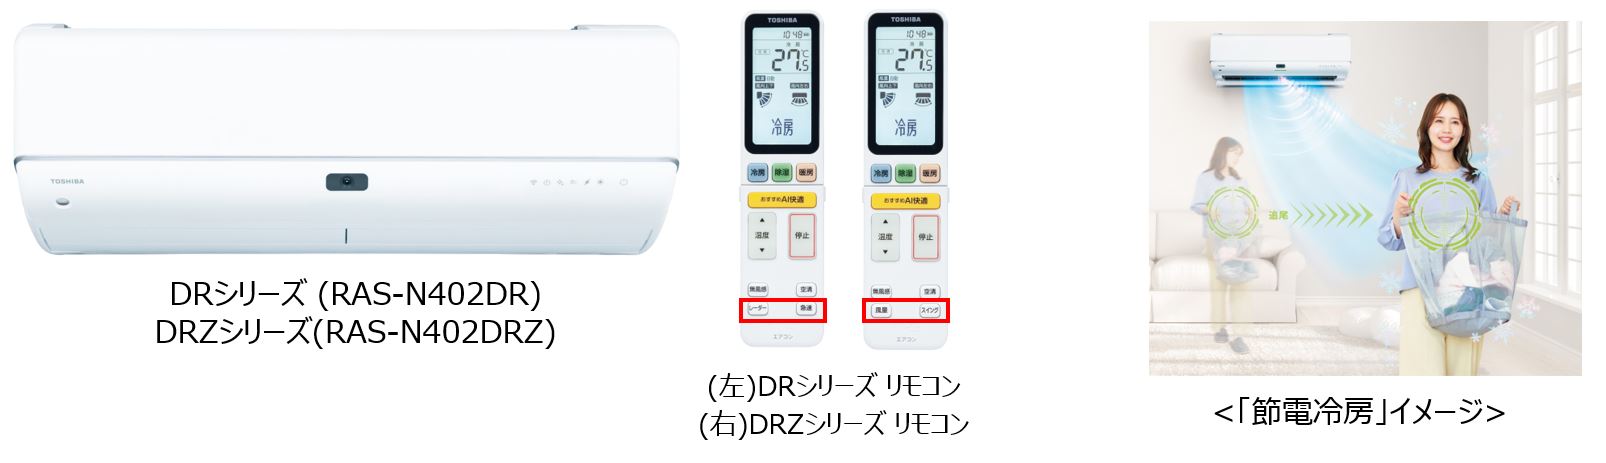 【鬼比較】RAS-N712DRZとRAS-N712DRの違い口コミ レビュー!